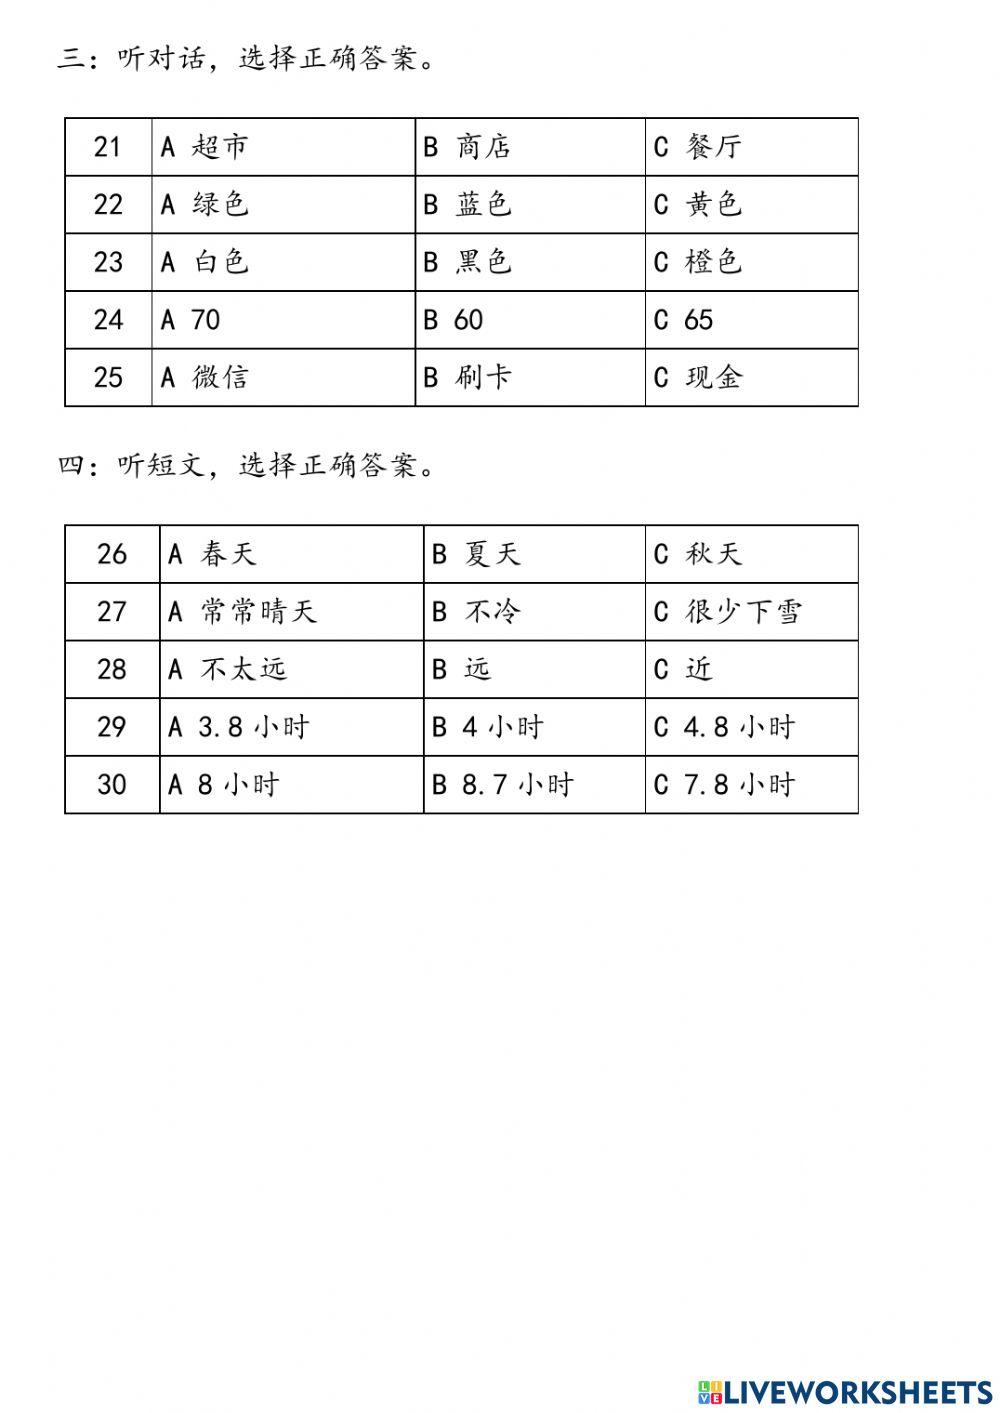 汉语之路2 - 第1到4课期中考试